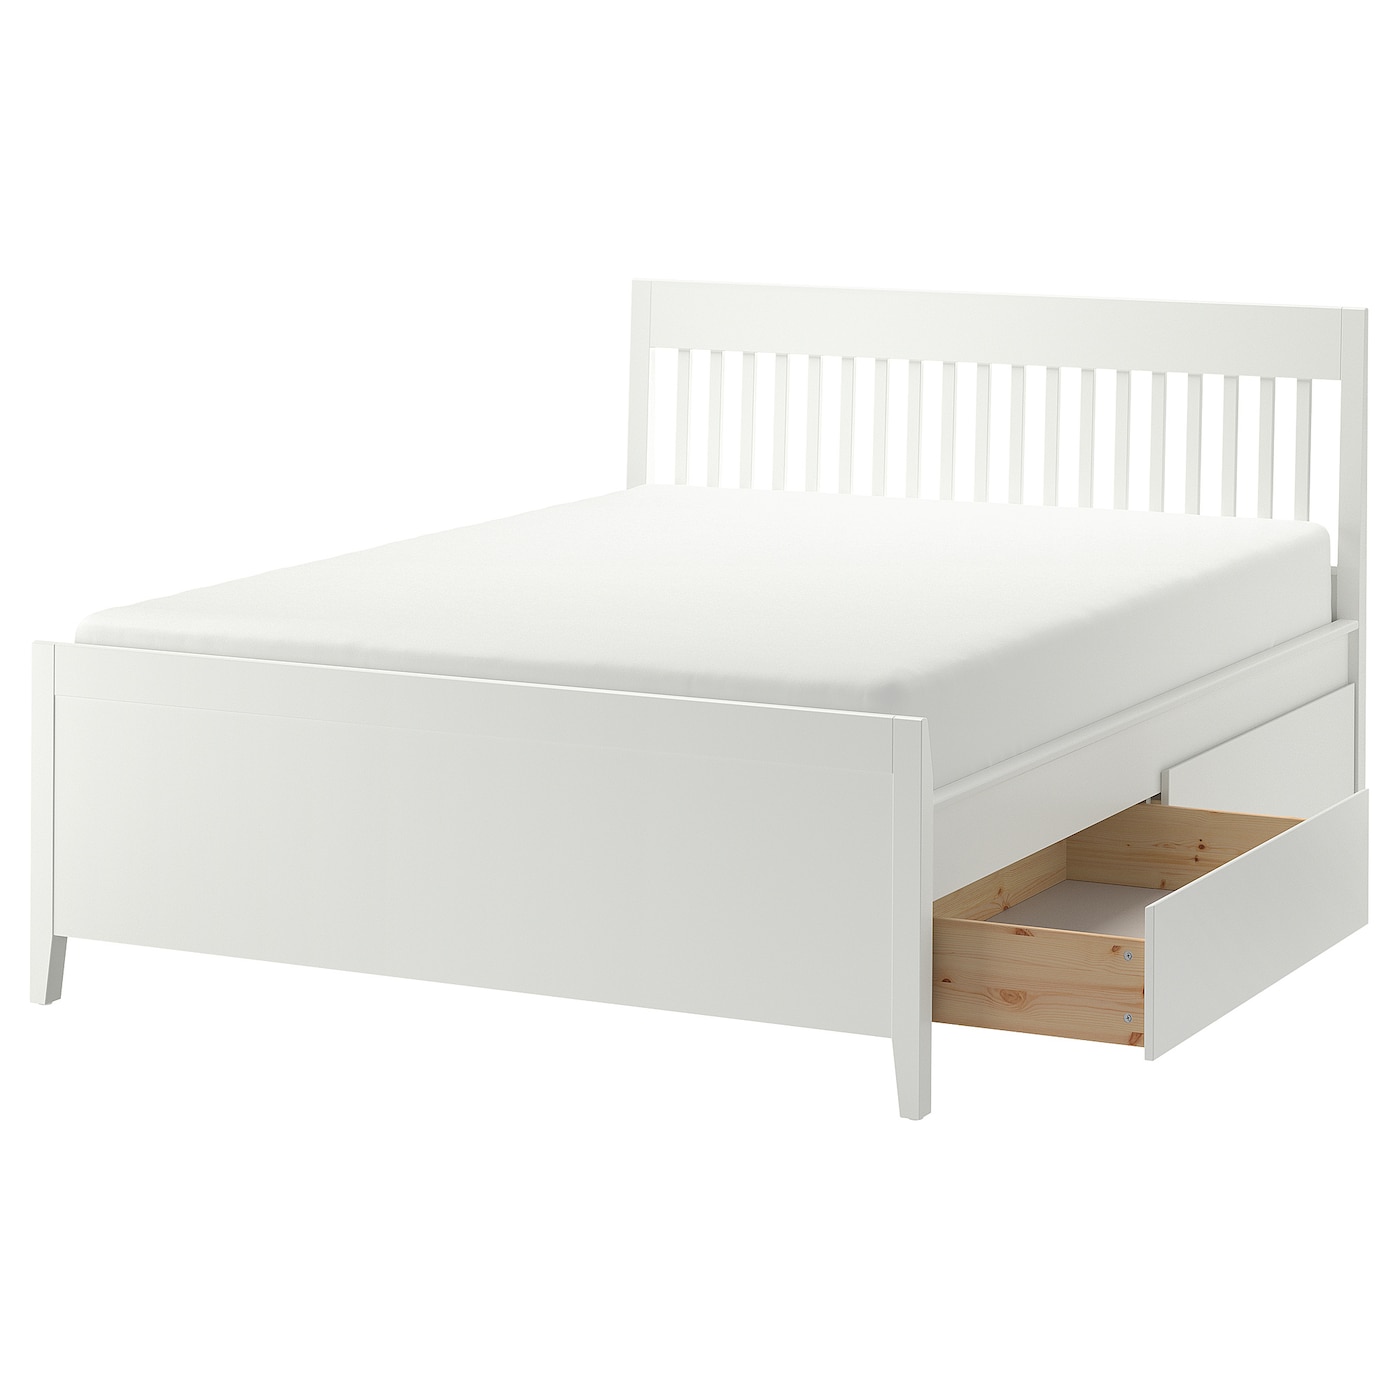 Каркас кровати с ящиками - IKEA IDANÄS/IDANAS, 200х160 см, белый, ИДАНЭС ИКЕА